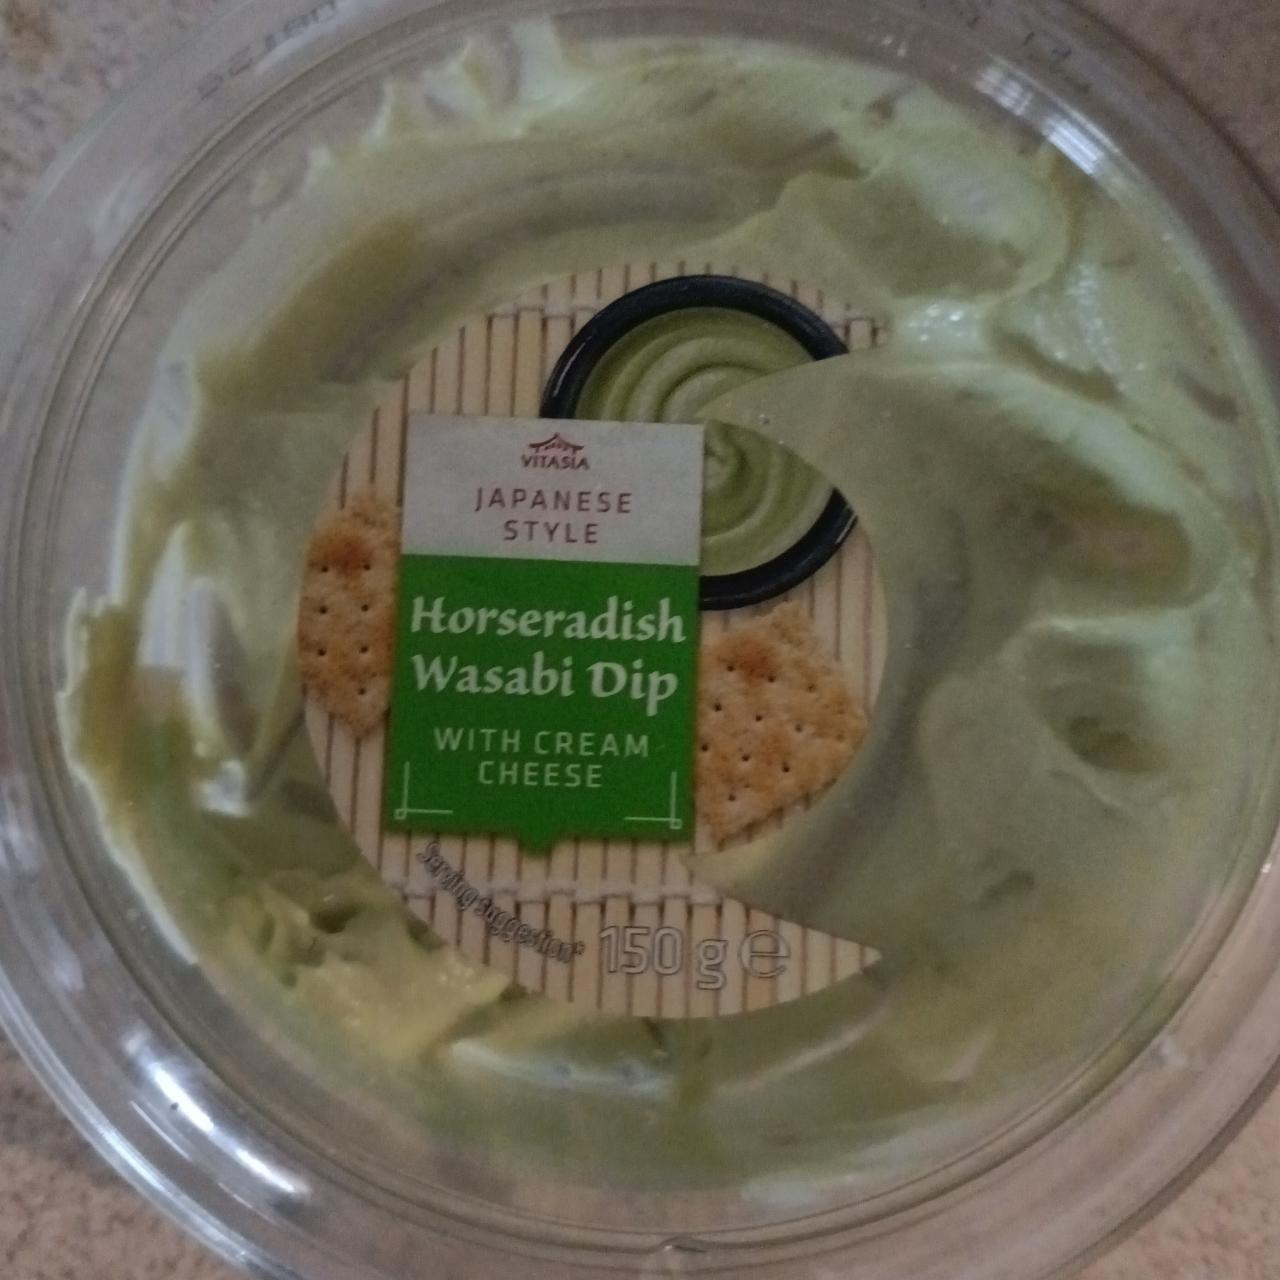 Fotografie - Horseradish Wasabi Dip with cream cheese Vitasia